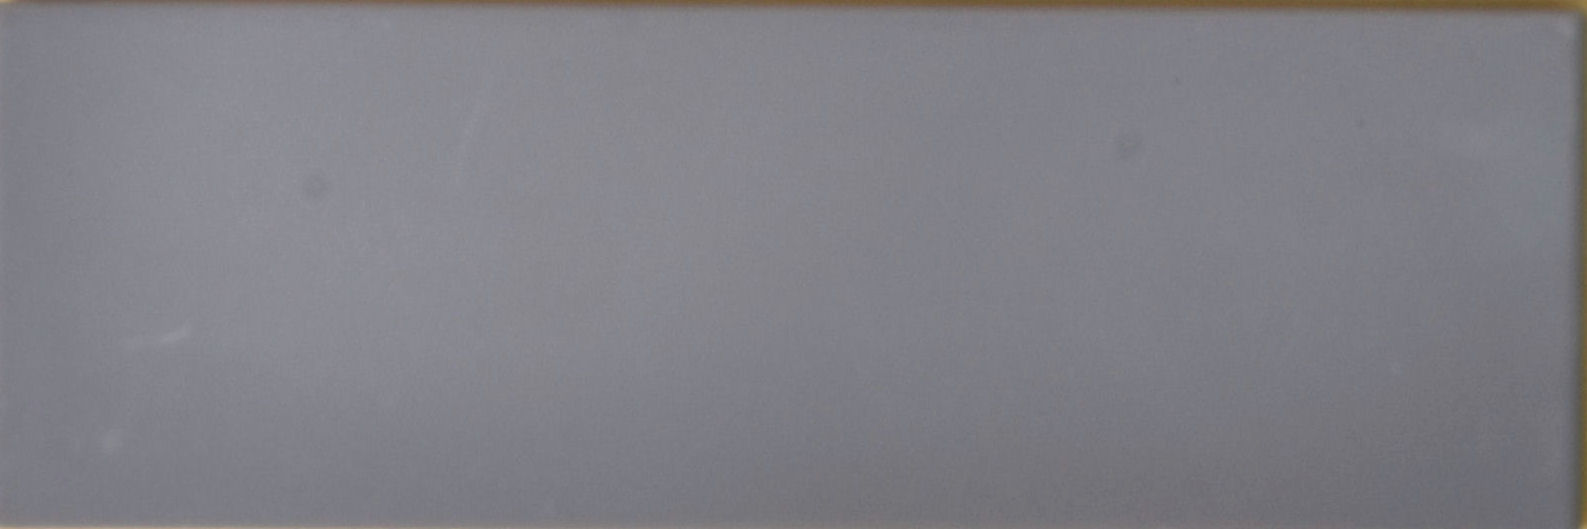 Contemporay Wall Tile -Dark Grey Gloss 300 x 100